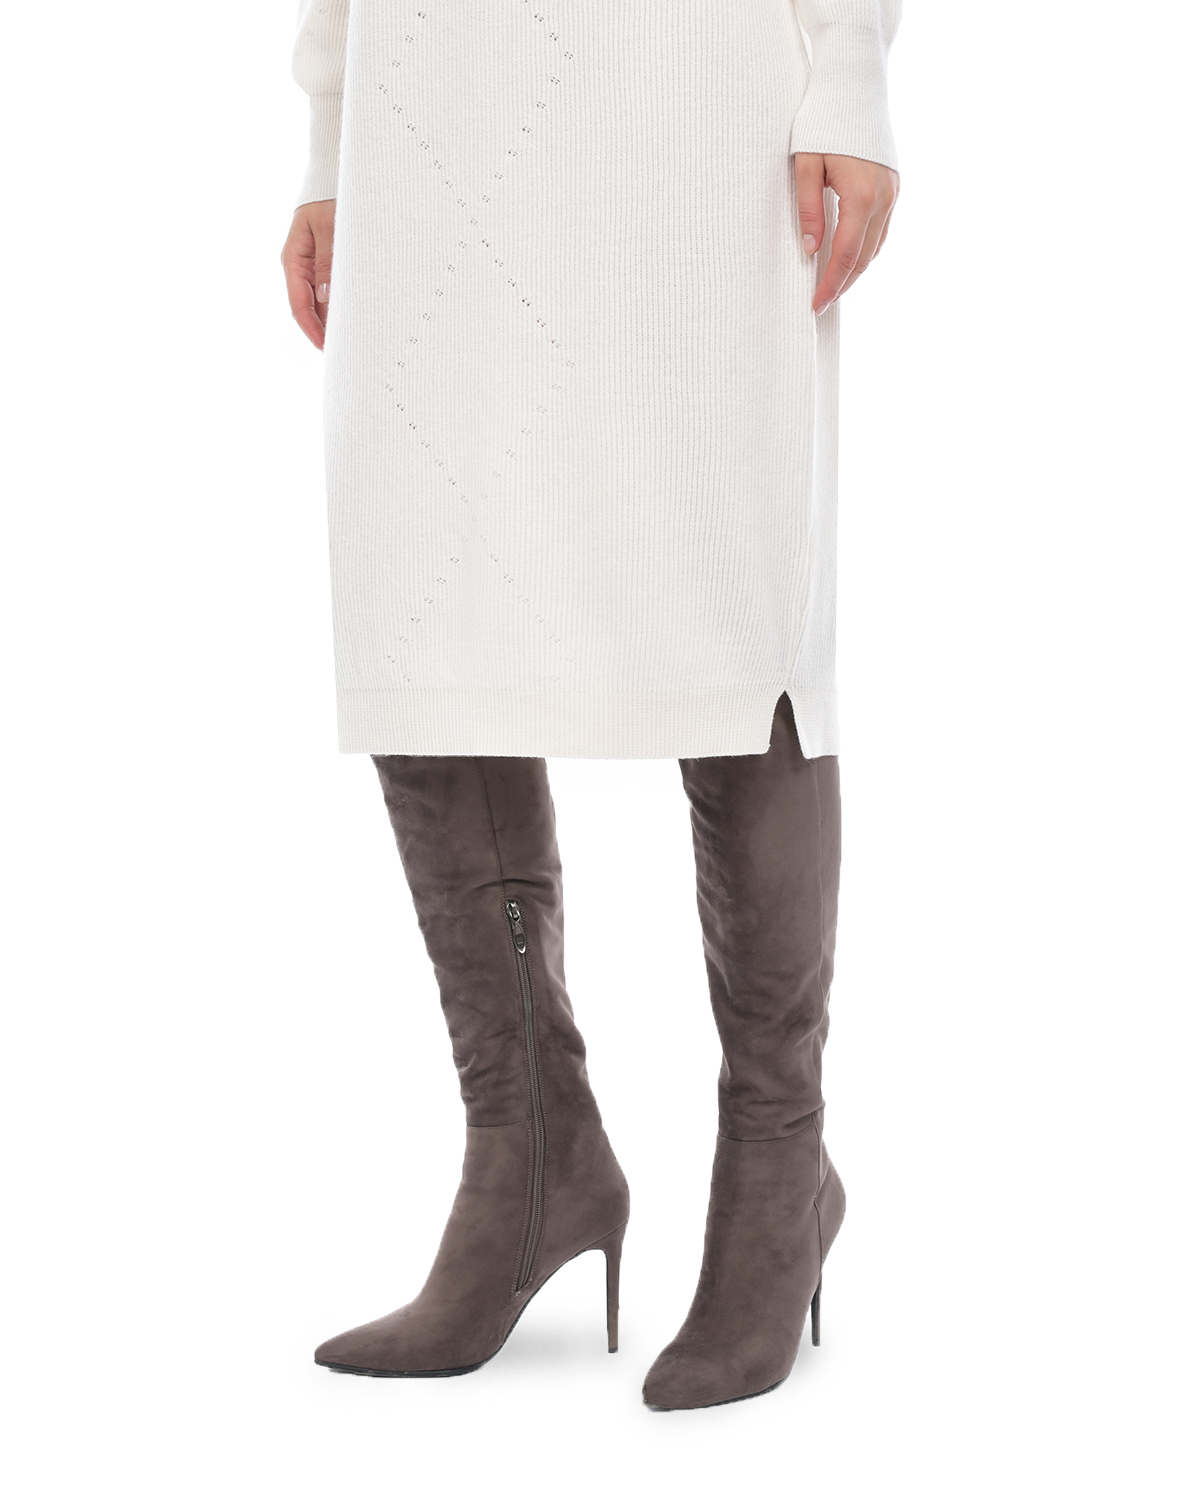 Платье из шерсти и шелка Panicale, размер 46, цвет кремовый - фото 7